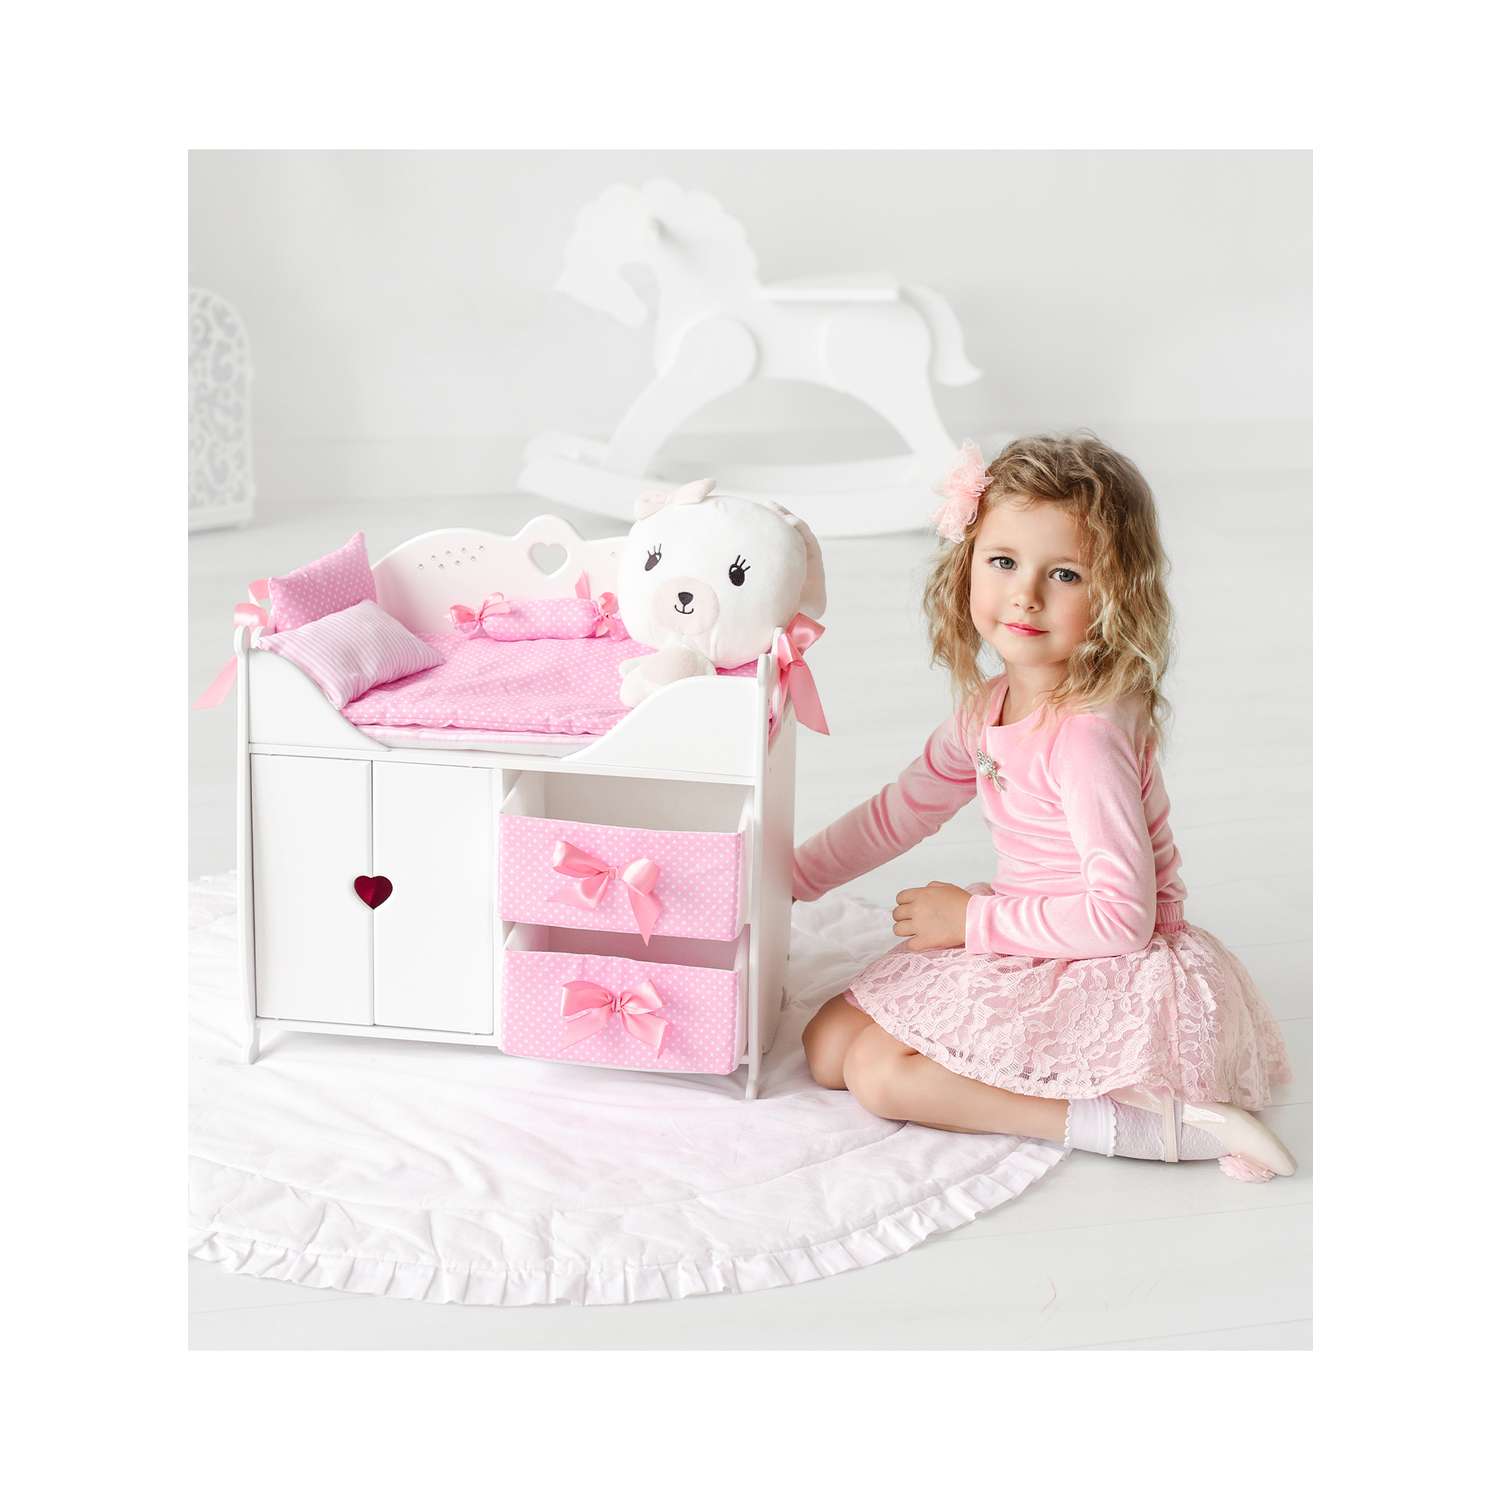 Мебель для кукол Мега Тойс шкаф кроватка пеленальный столик 45см 71319 - фото 6